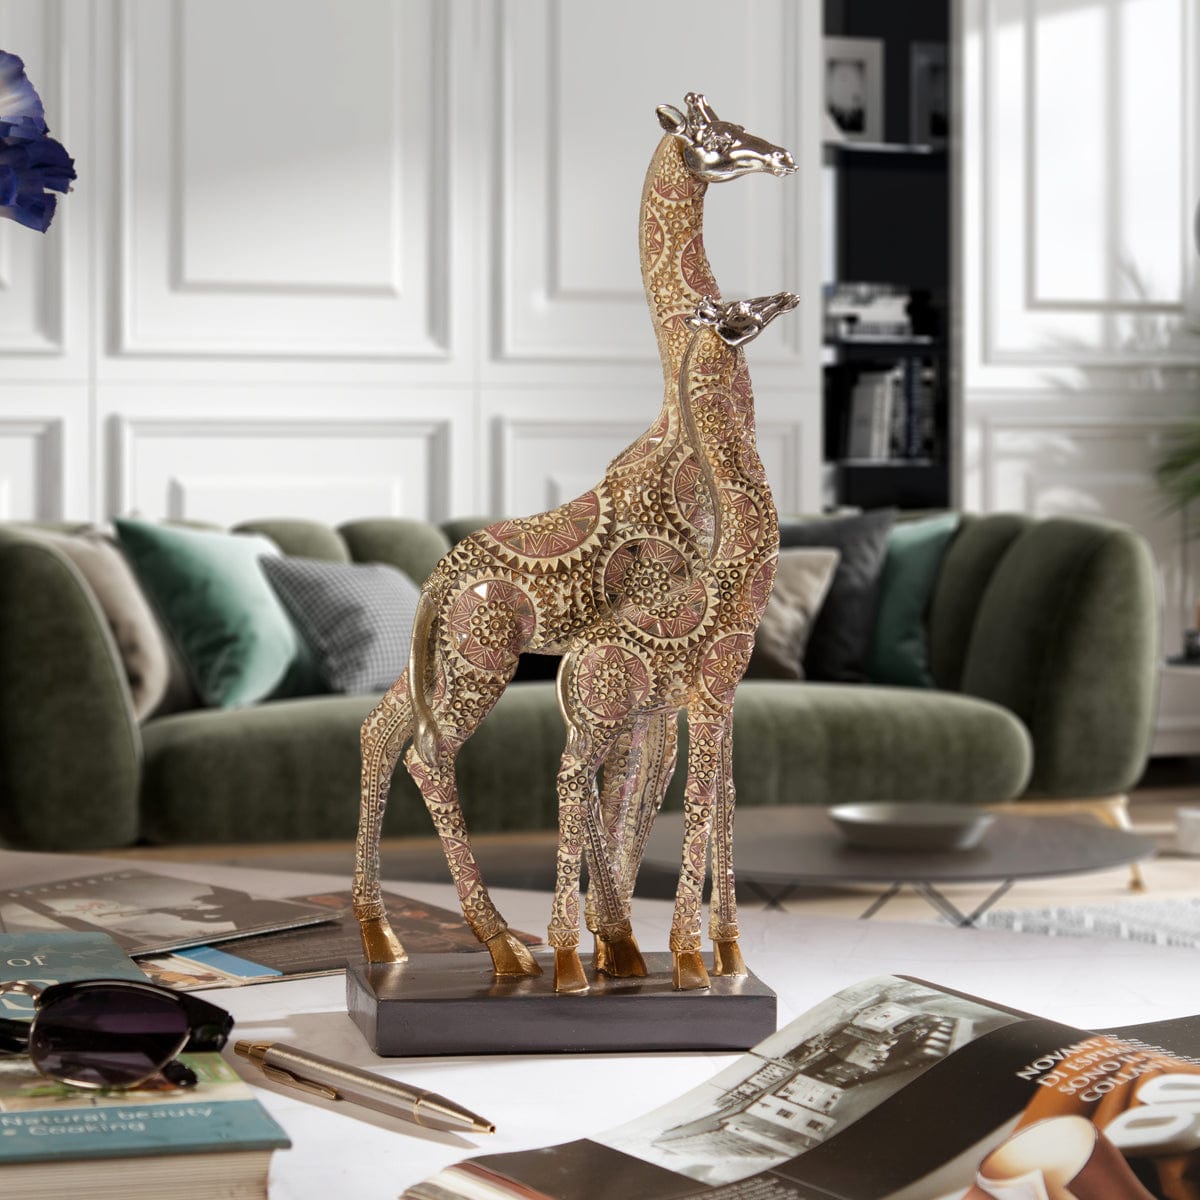 Red Butler Showpieces Printed Giraffe Duo LPG06A1 Giraffe Duo Showpiece – Resin Masterpiece for Elegant Home Decor | Animal figurine showpieces Redbutler